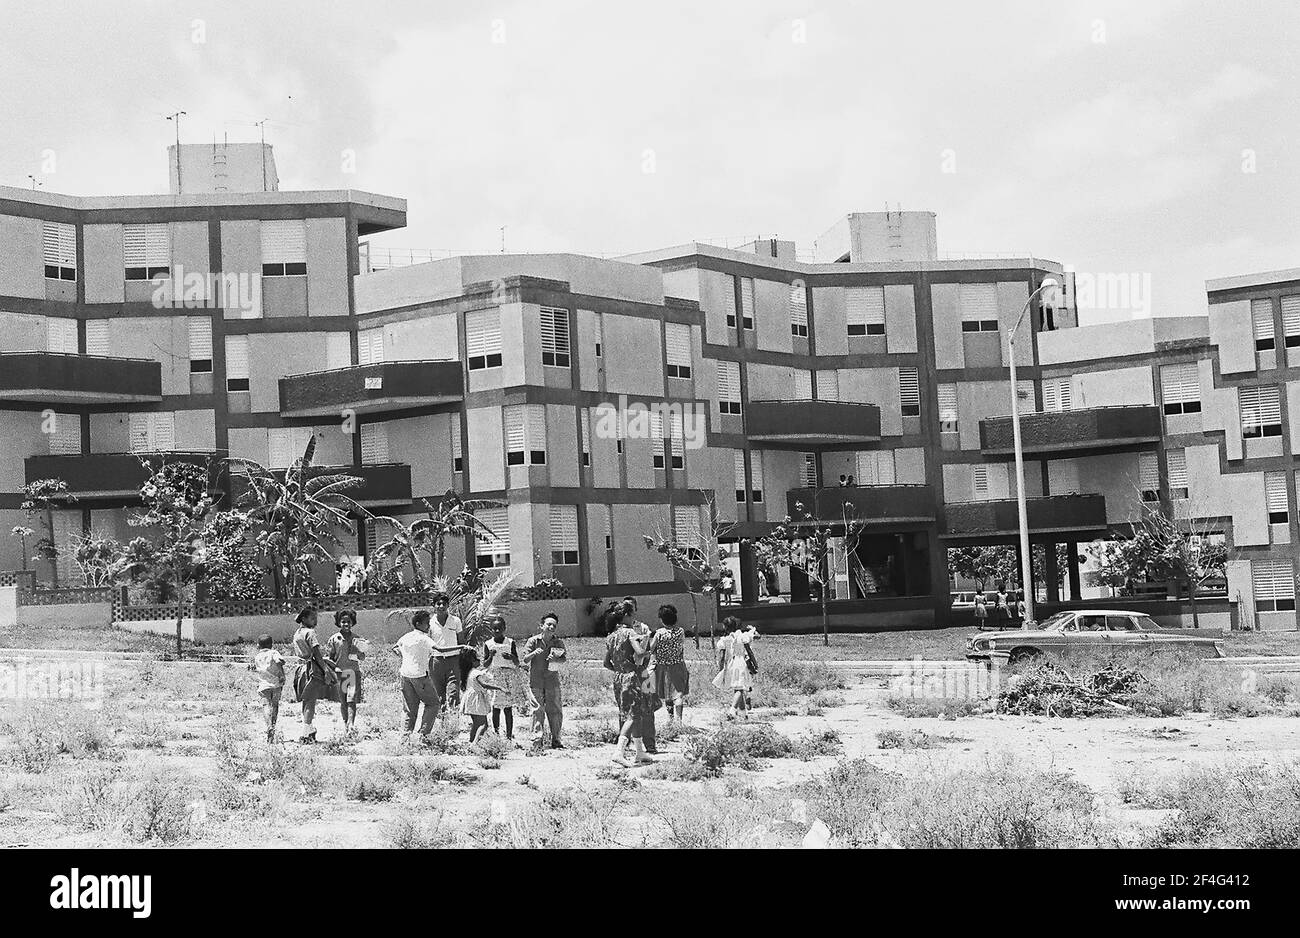 Le logement est visible à Habana Este, Cuba avec des enfants jouant devant les bâtiments, 1964. De la collection de photographies Deena Stryker. () Banque D'Images